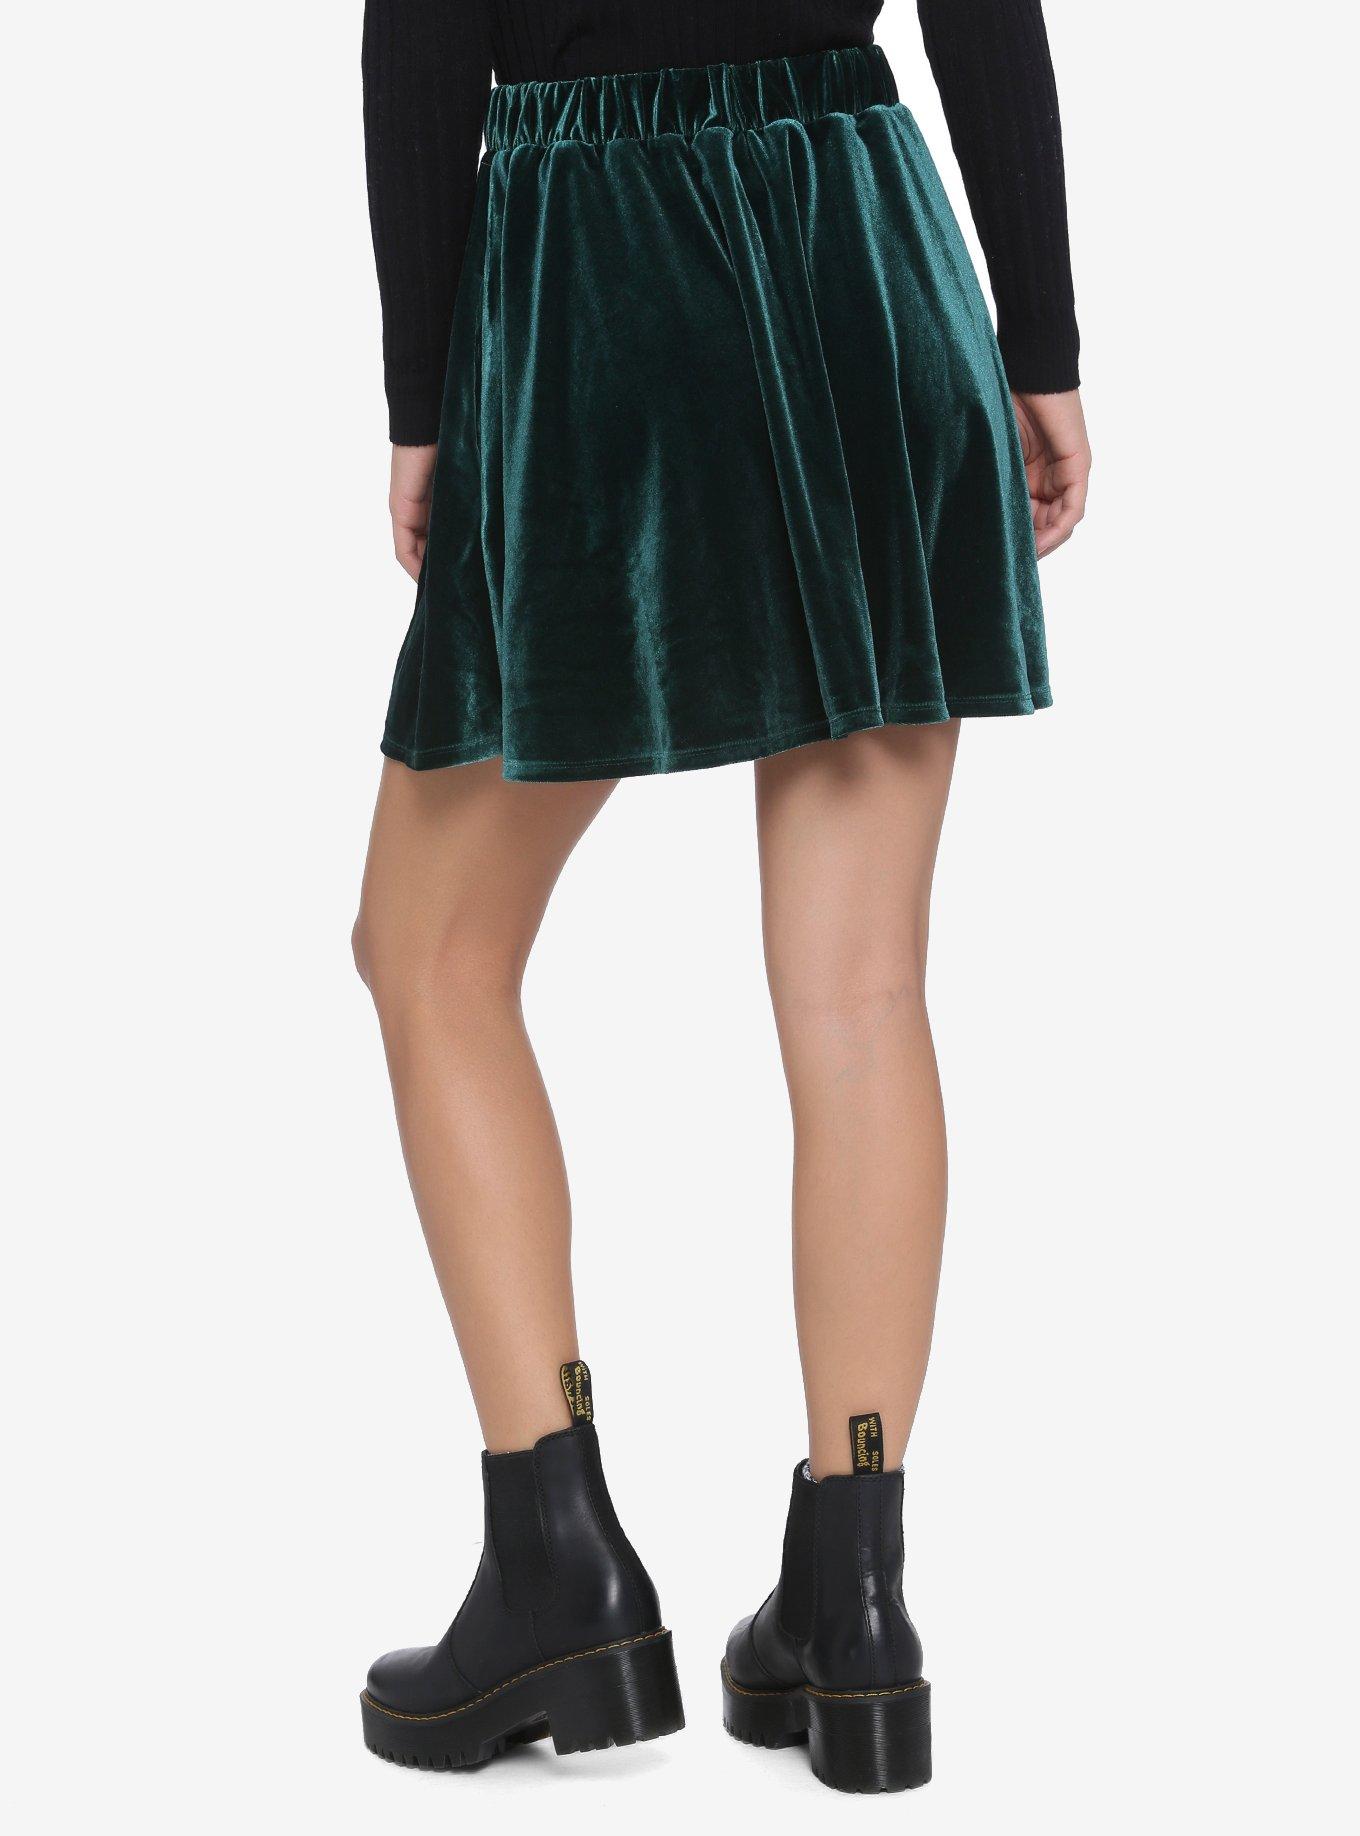 Green Velvet Skater Skirt, GREEN, alternate